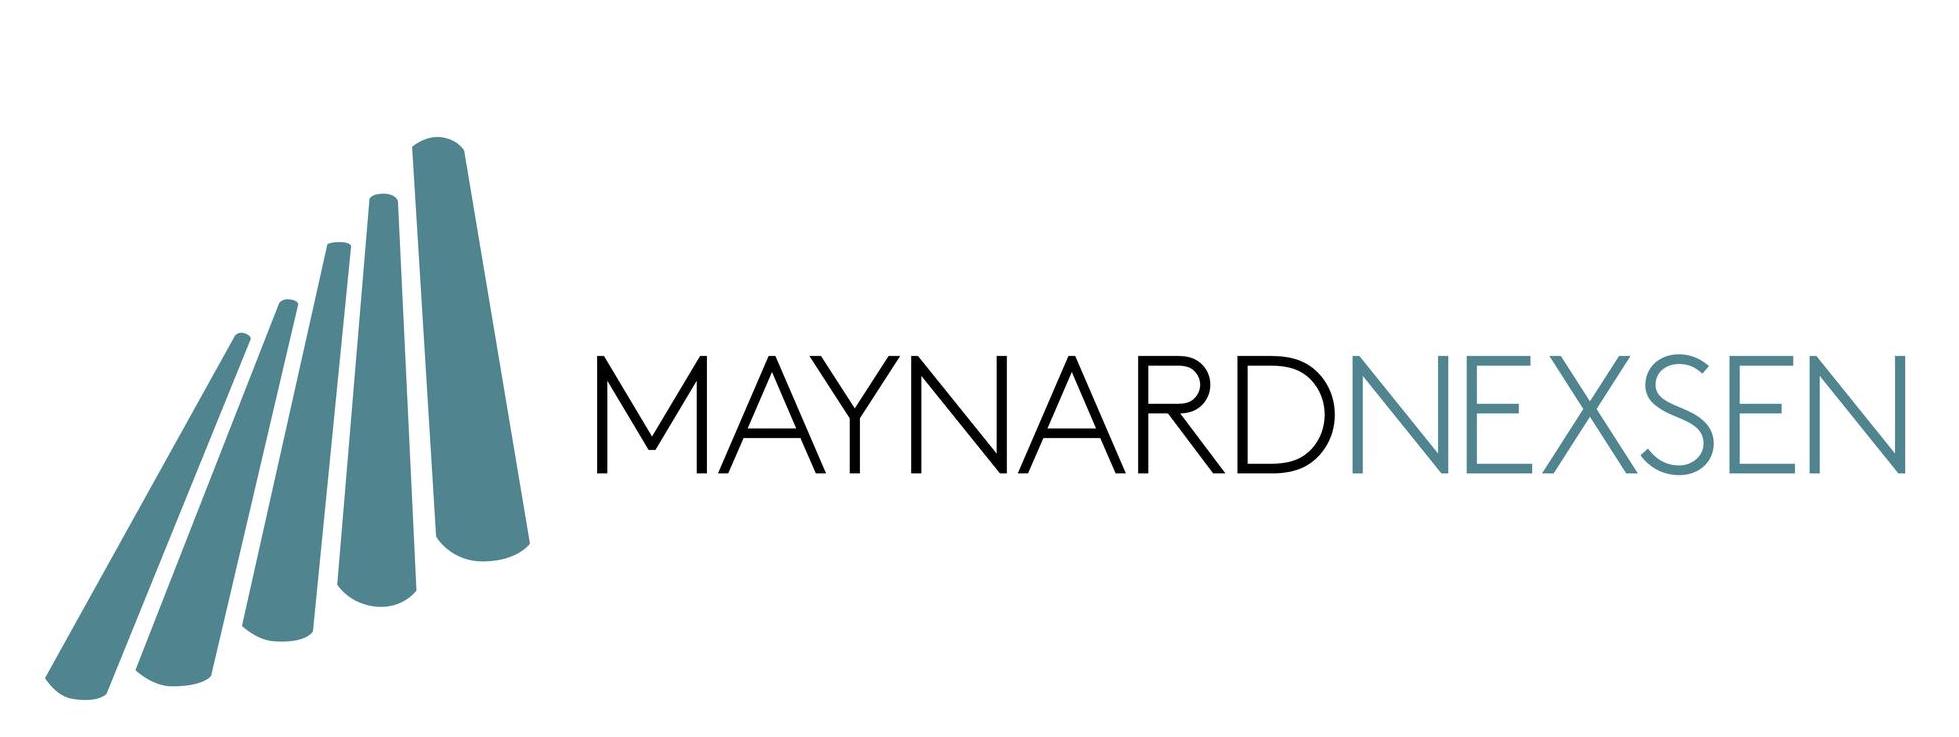 MaynardNexsen